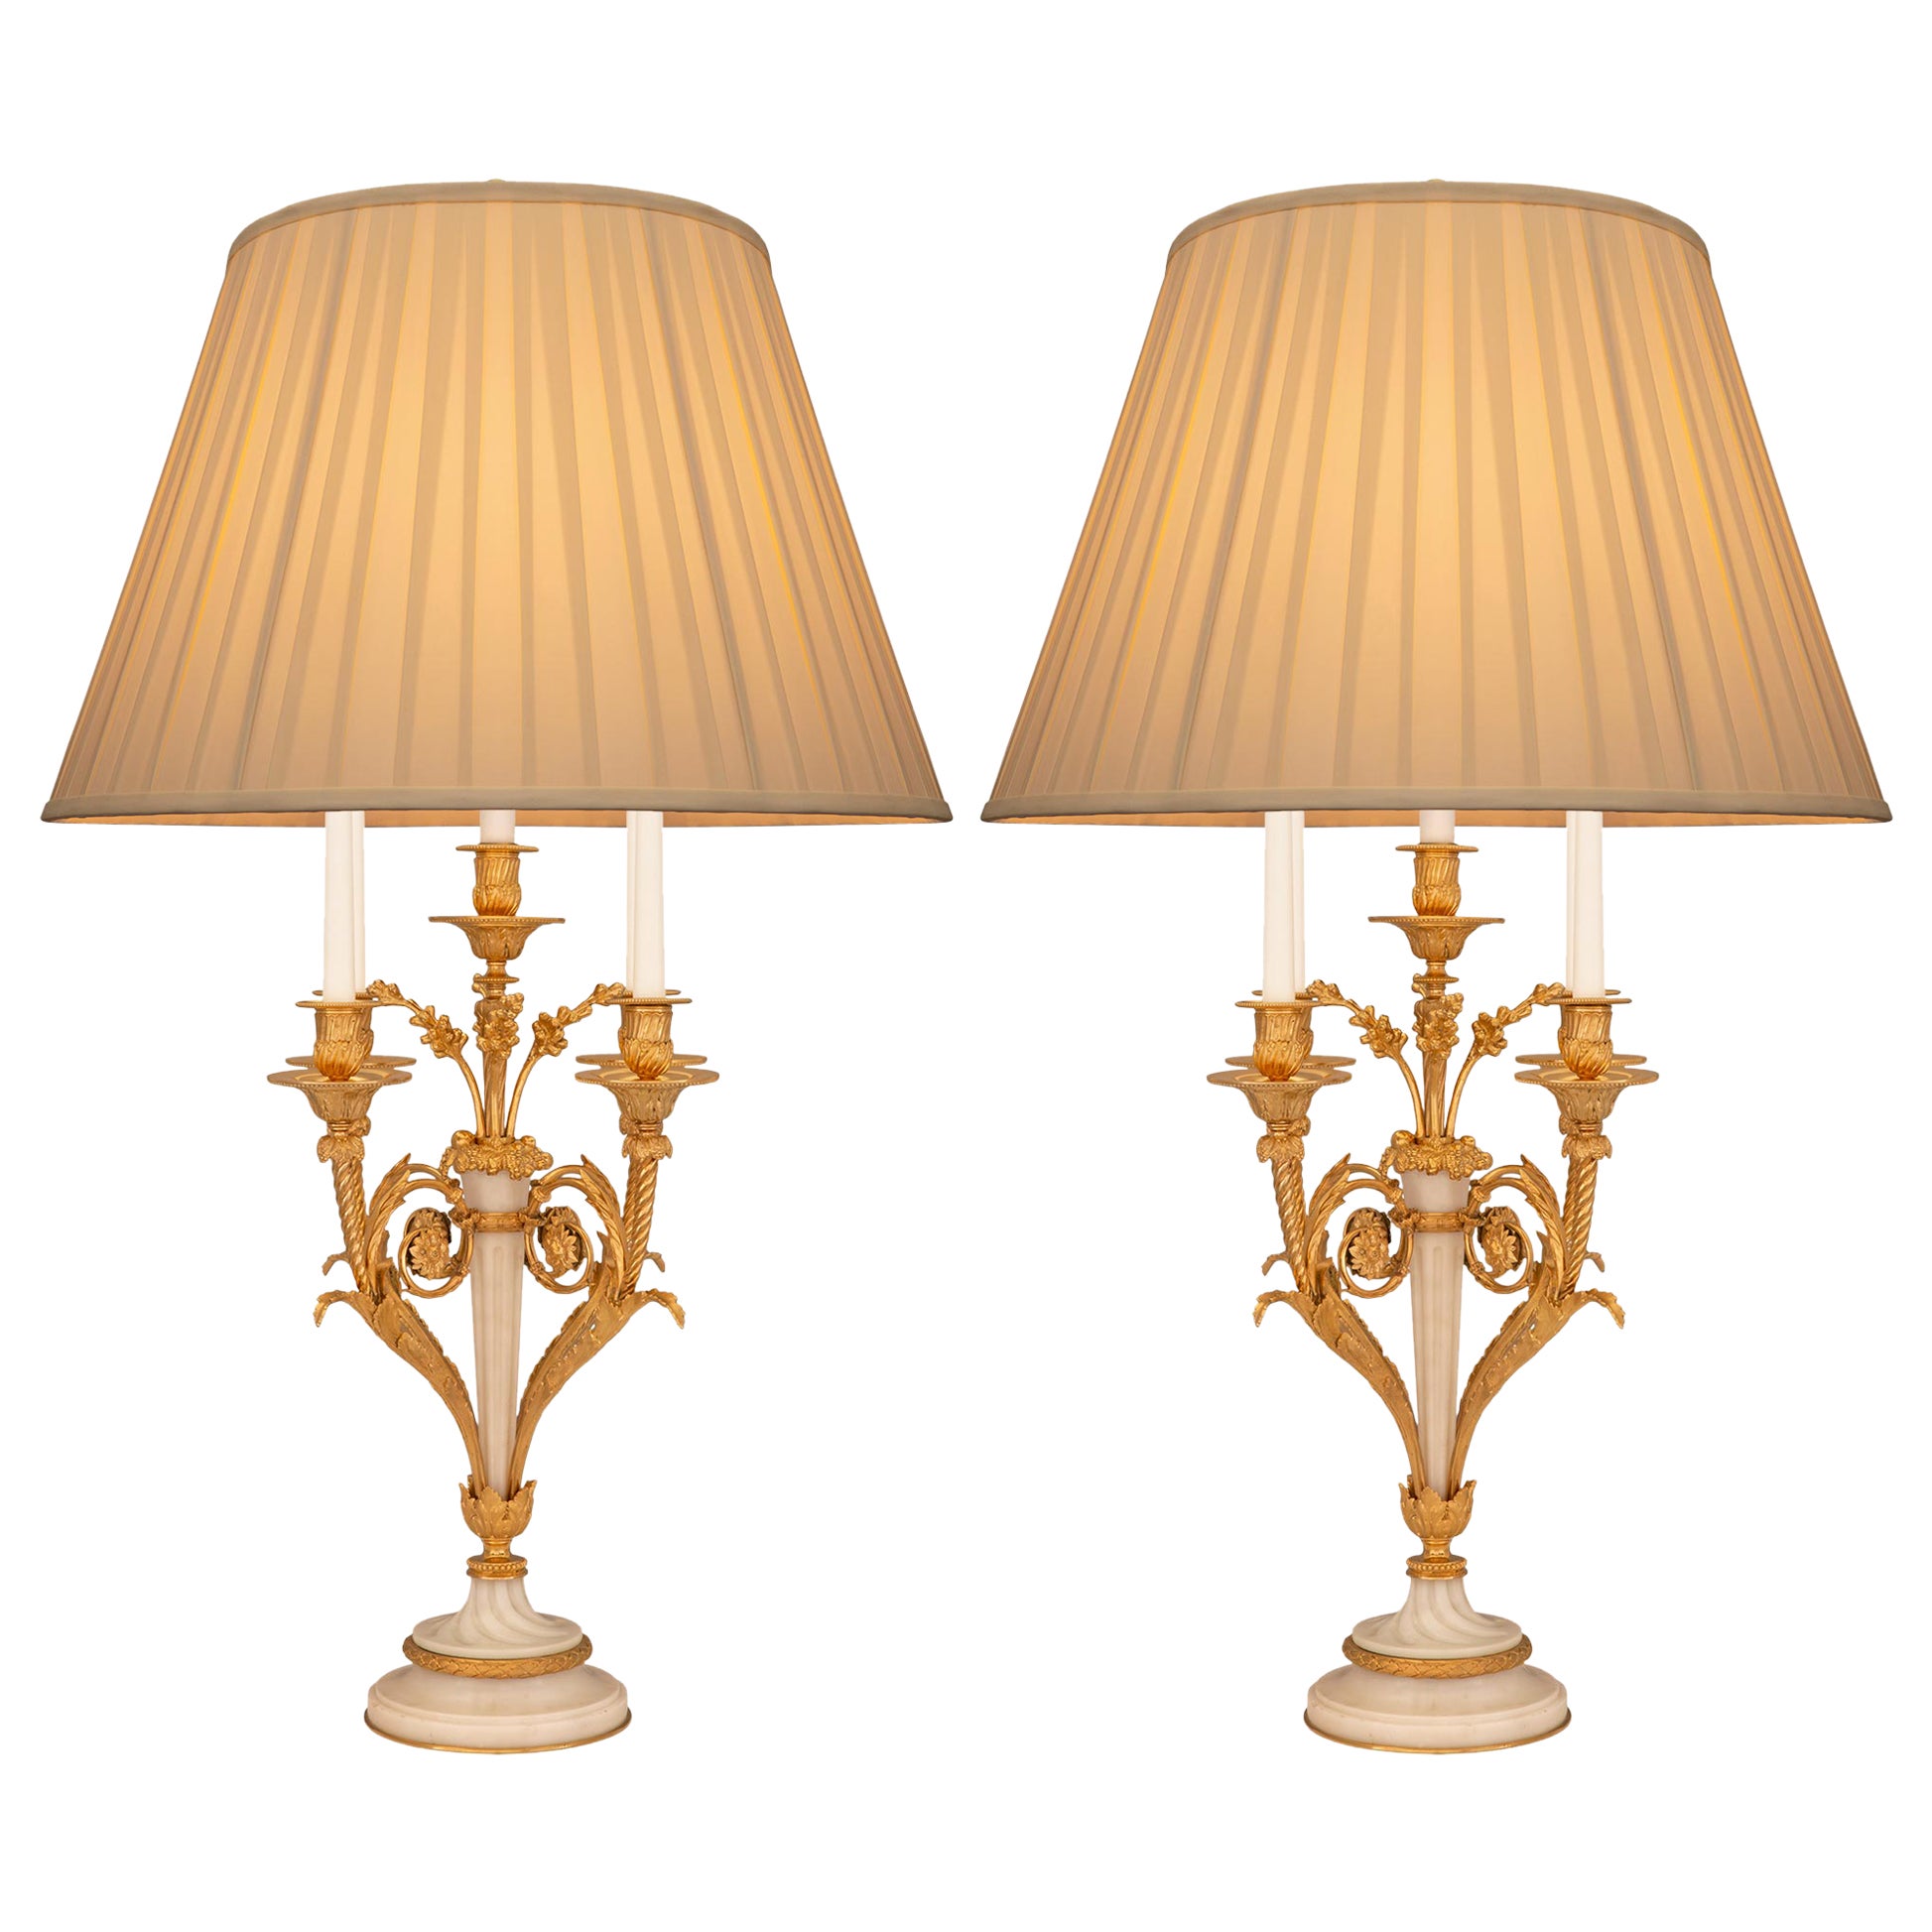 Lampes candélabres du XIXe siècle de style Louis XVI et de la Belle Époque française